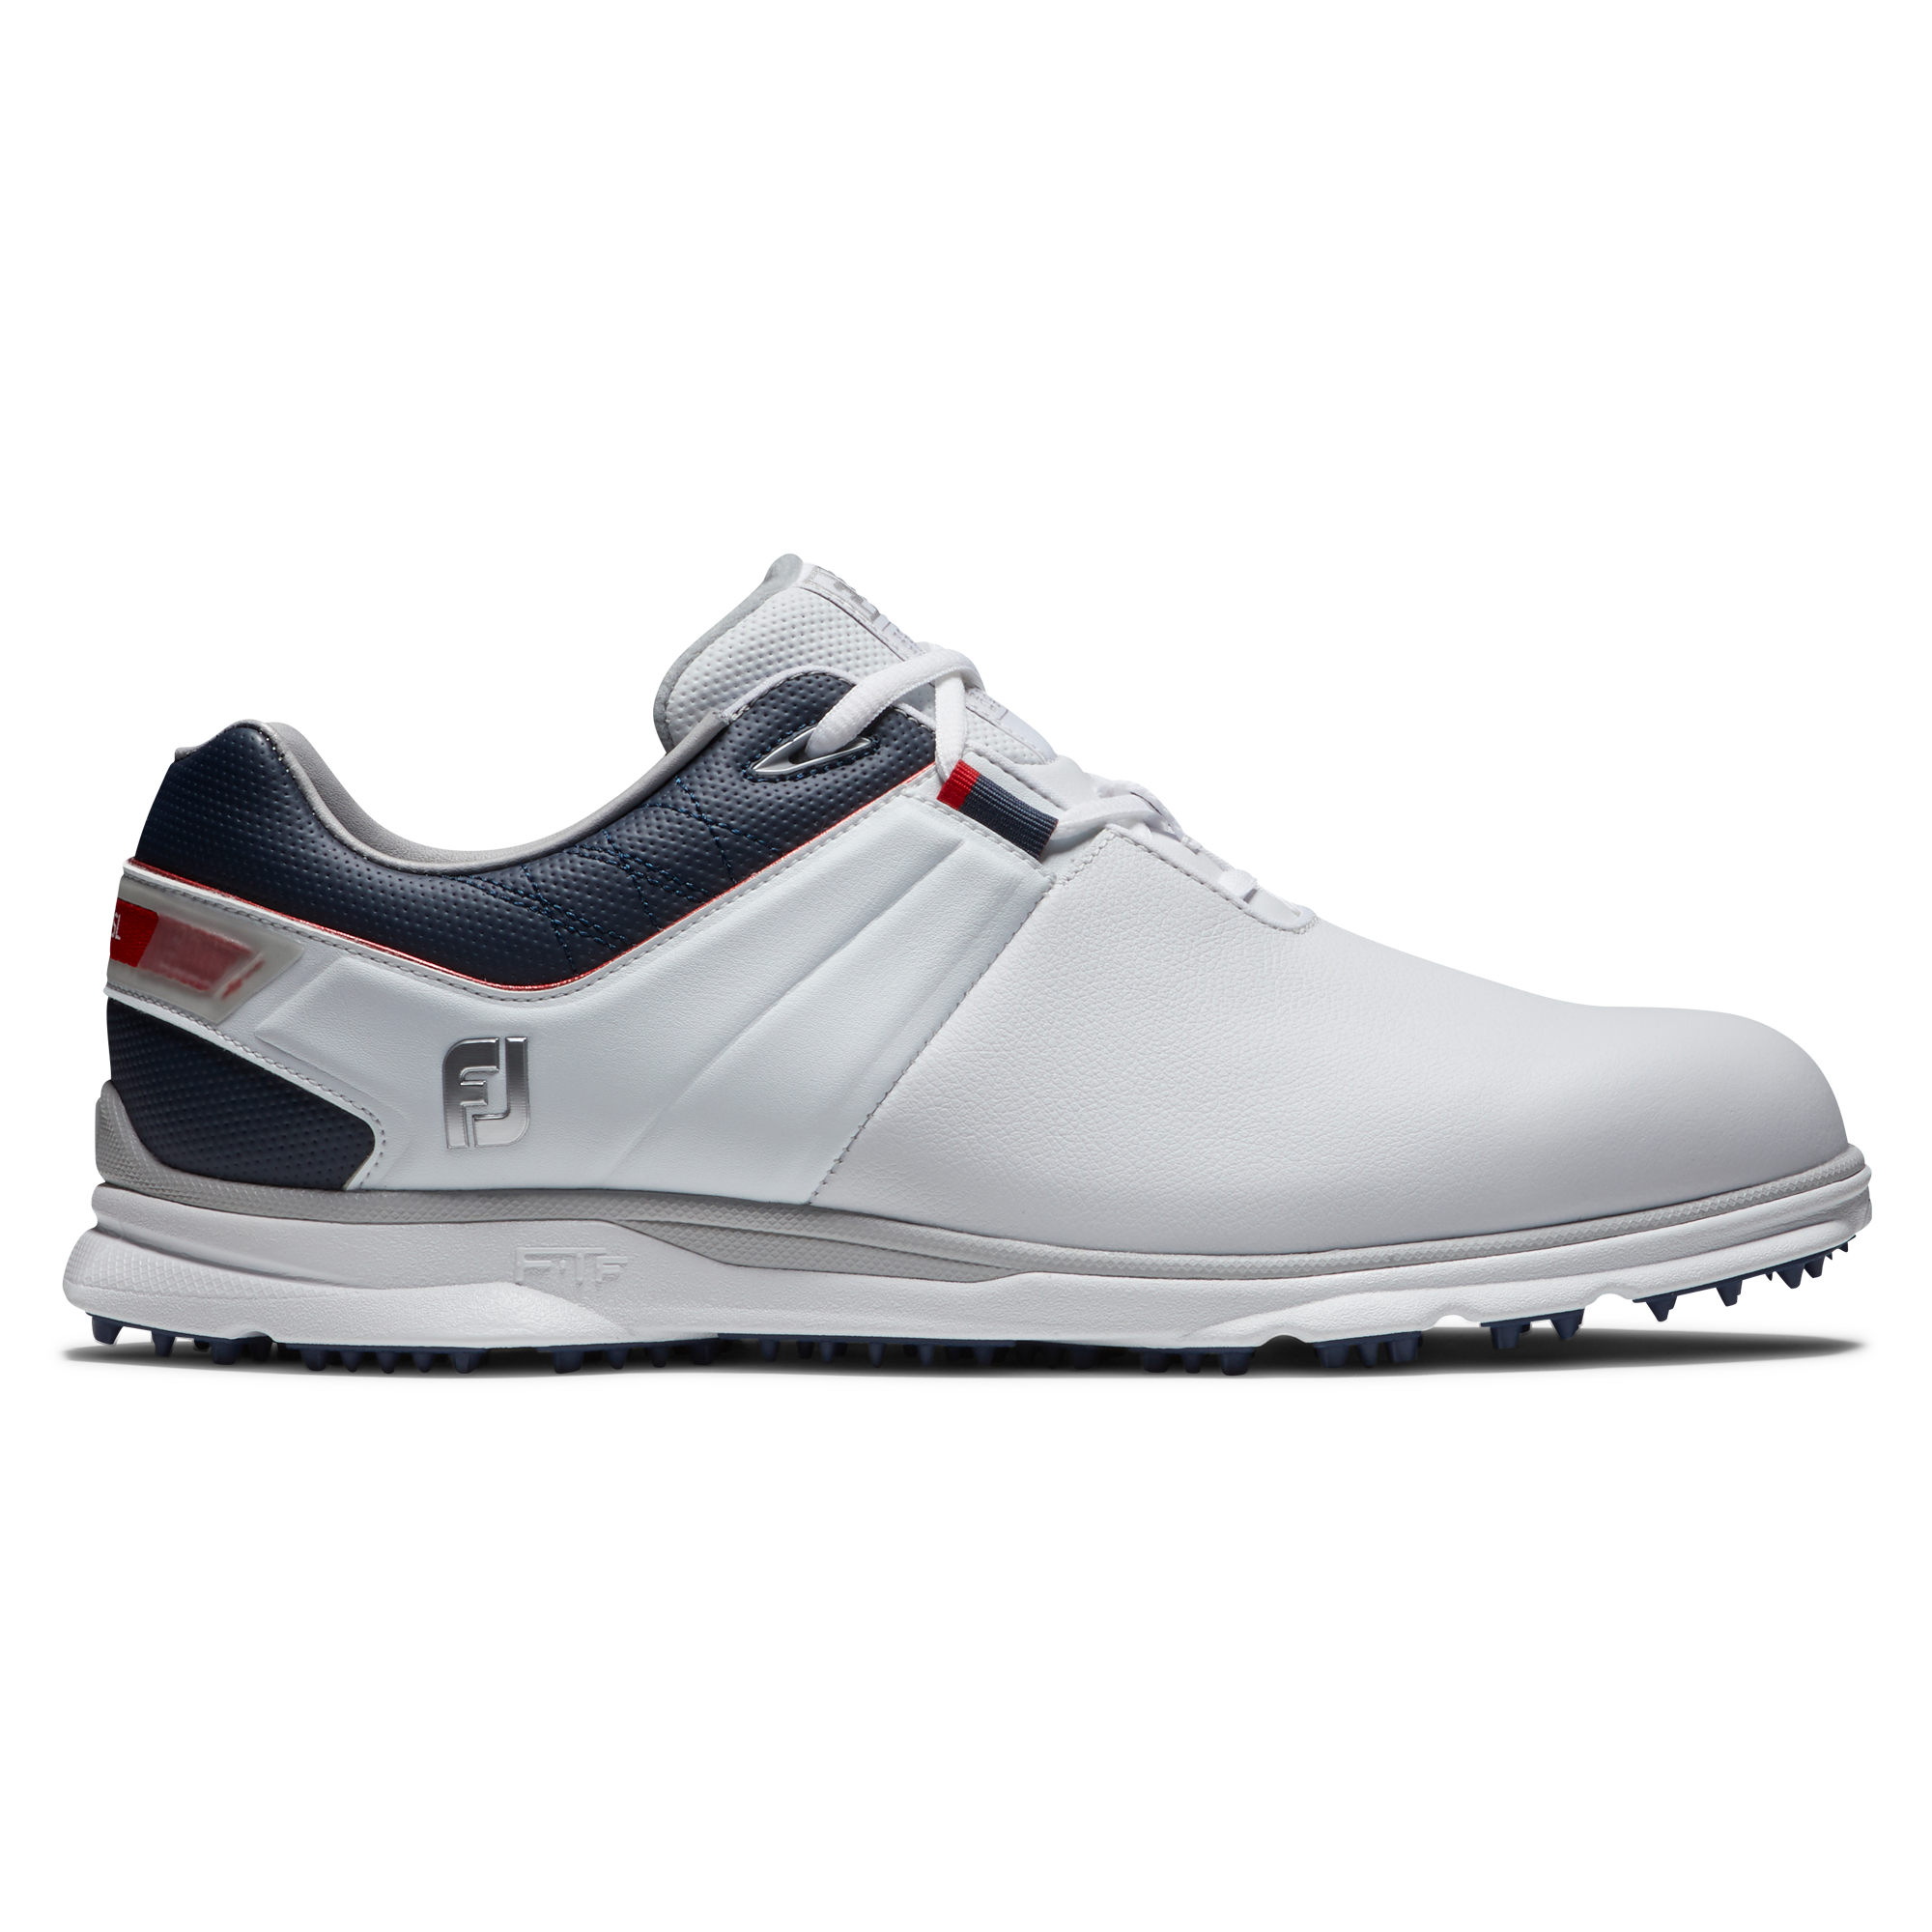 FootJoy Pro/SL pánské golfové boty, bílé/tmavě modré DOPRODEJ